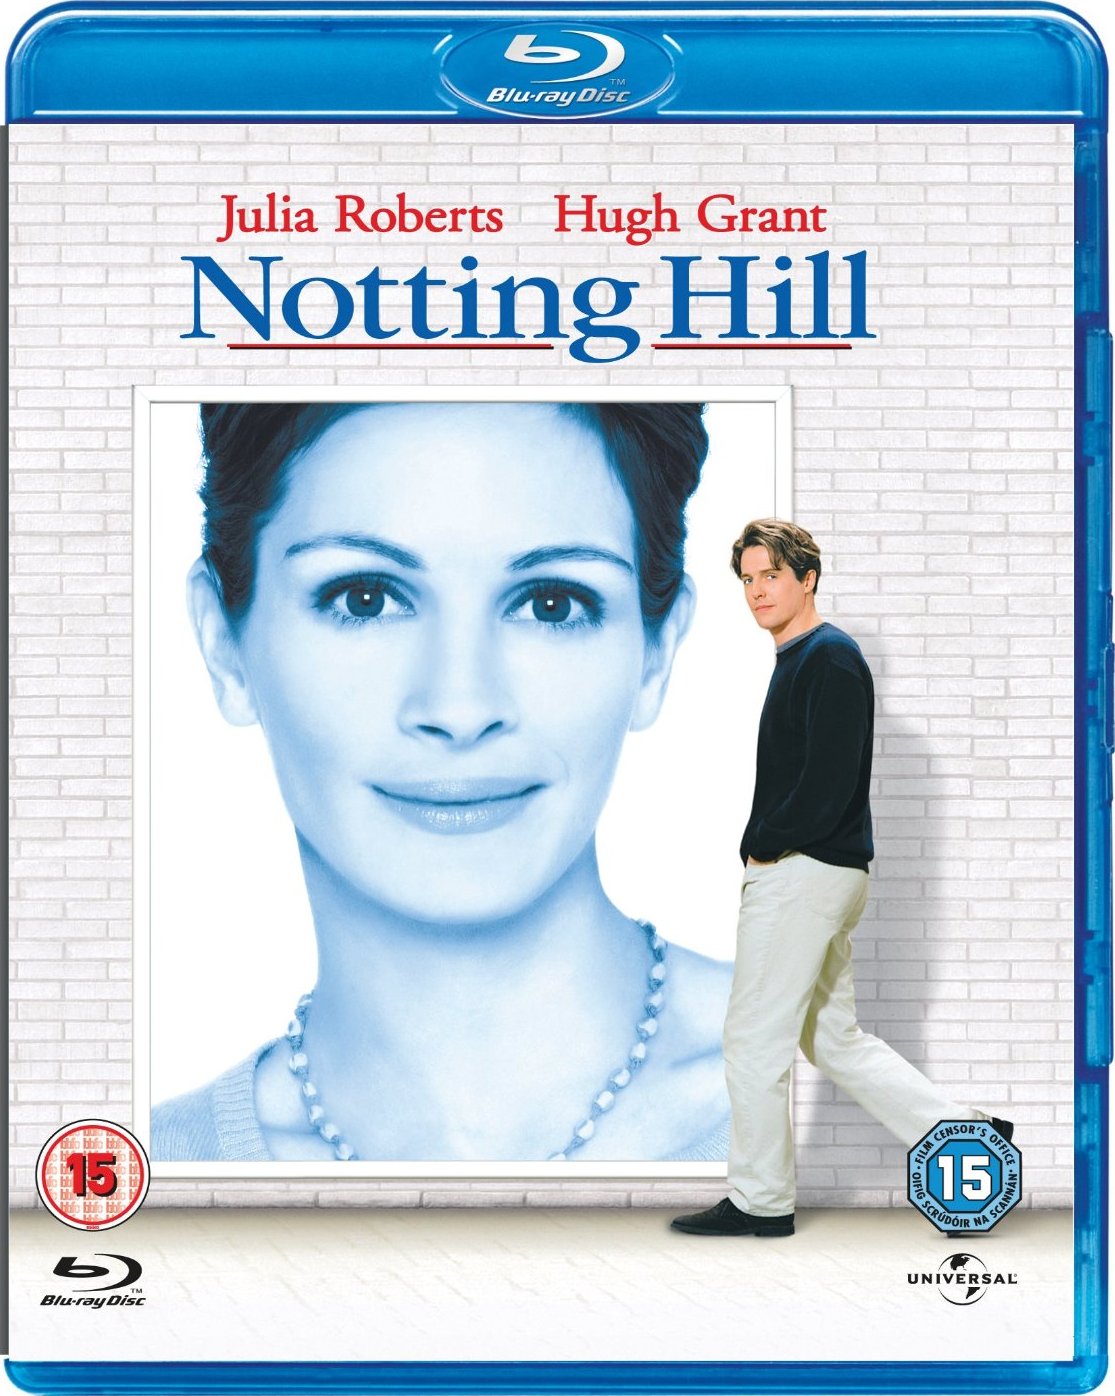 諾丁山/新娘百分百 國英雙語 英簡繁SUP字幕 Notting Hill 1999 BluRay 1080p 2Audio DTS-HD MA5.1 x265.10bit-BeiTai